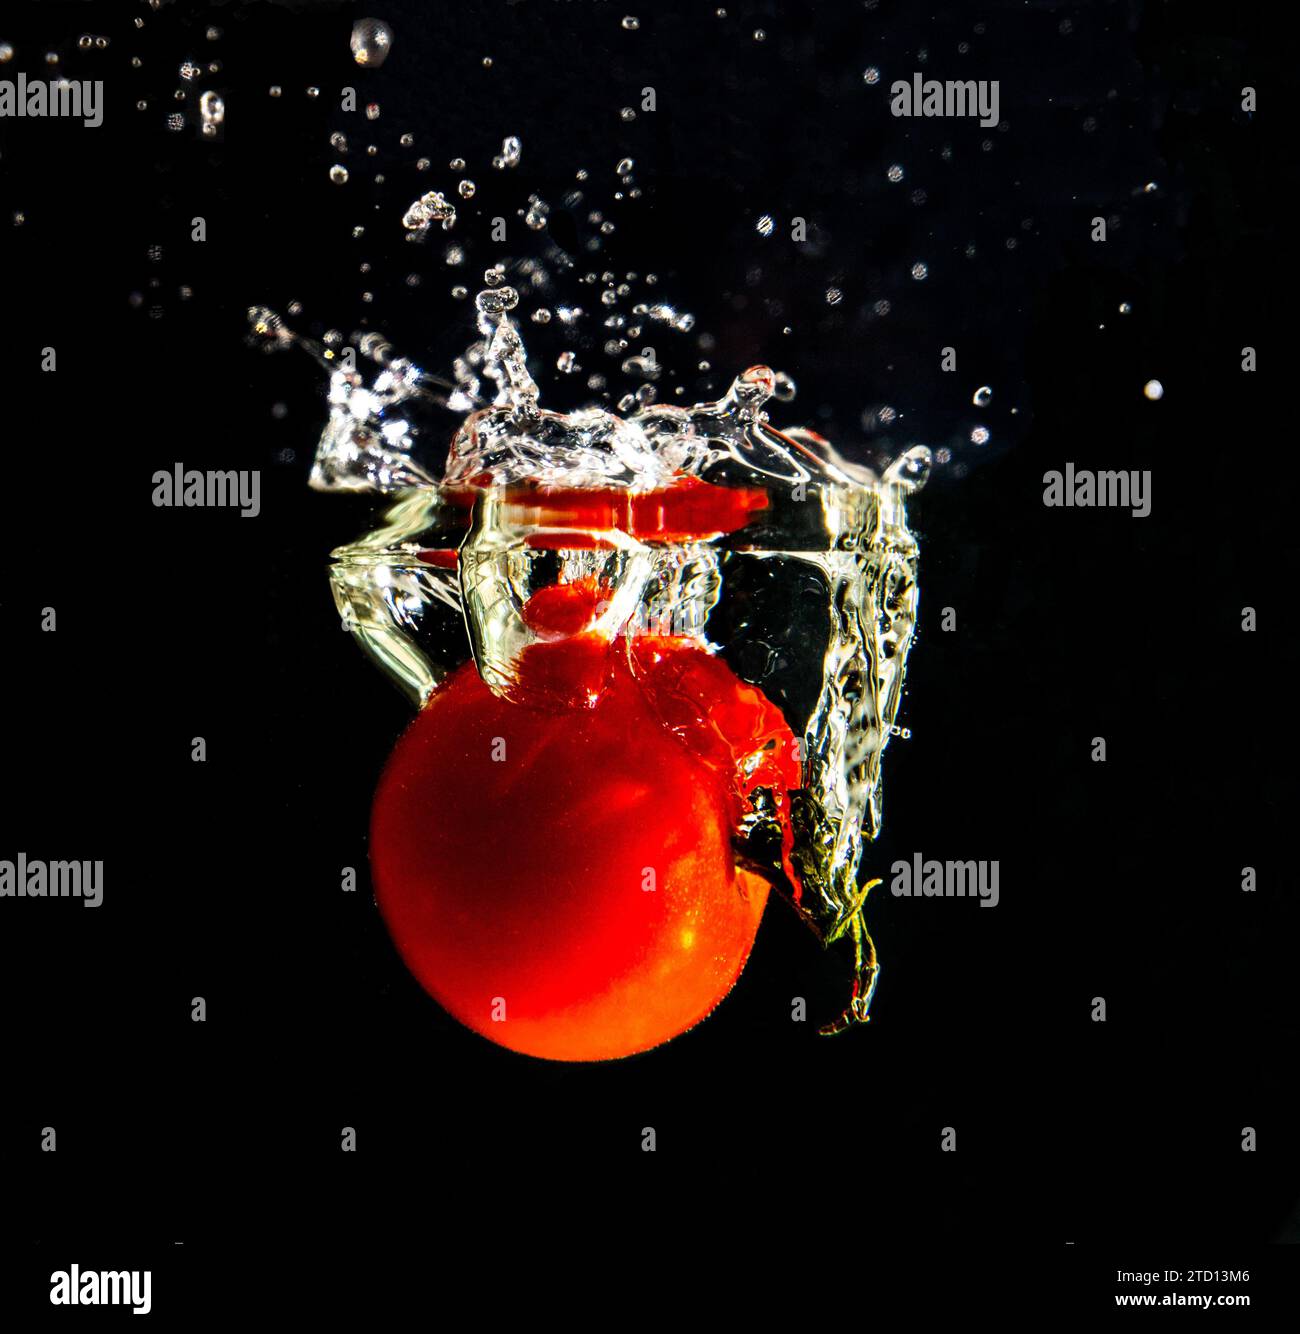 Eine tomate die ins Wasser fällt mit Tropfenbildung Banque D'Images